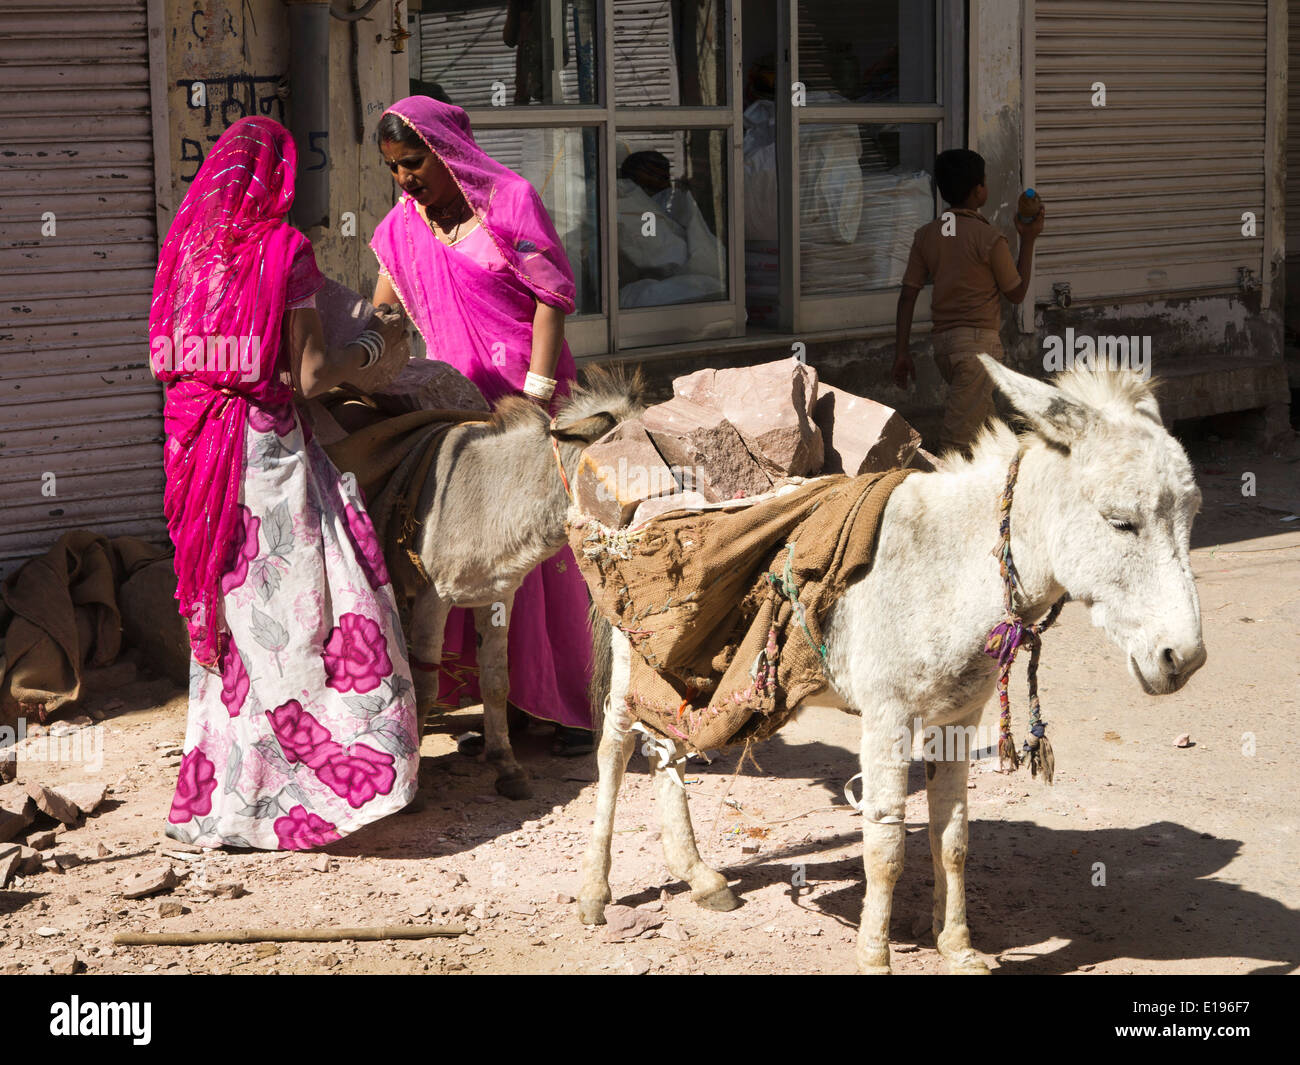 L'Inde, Rajasthan, Jodhpur, les femmes en saris colorés chargement des ânes avec des blocs de pierre Banque D'Images